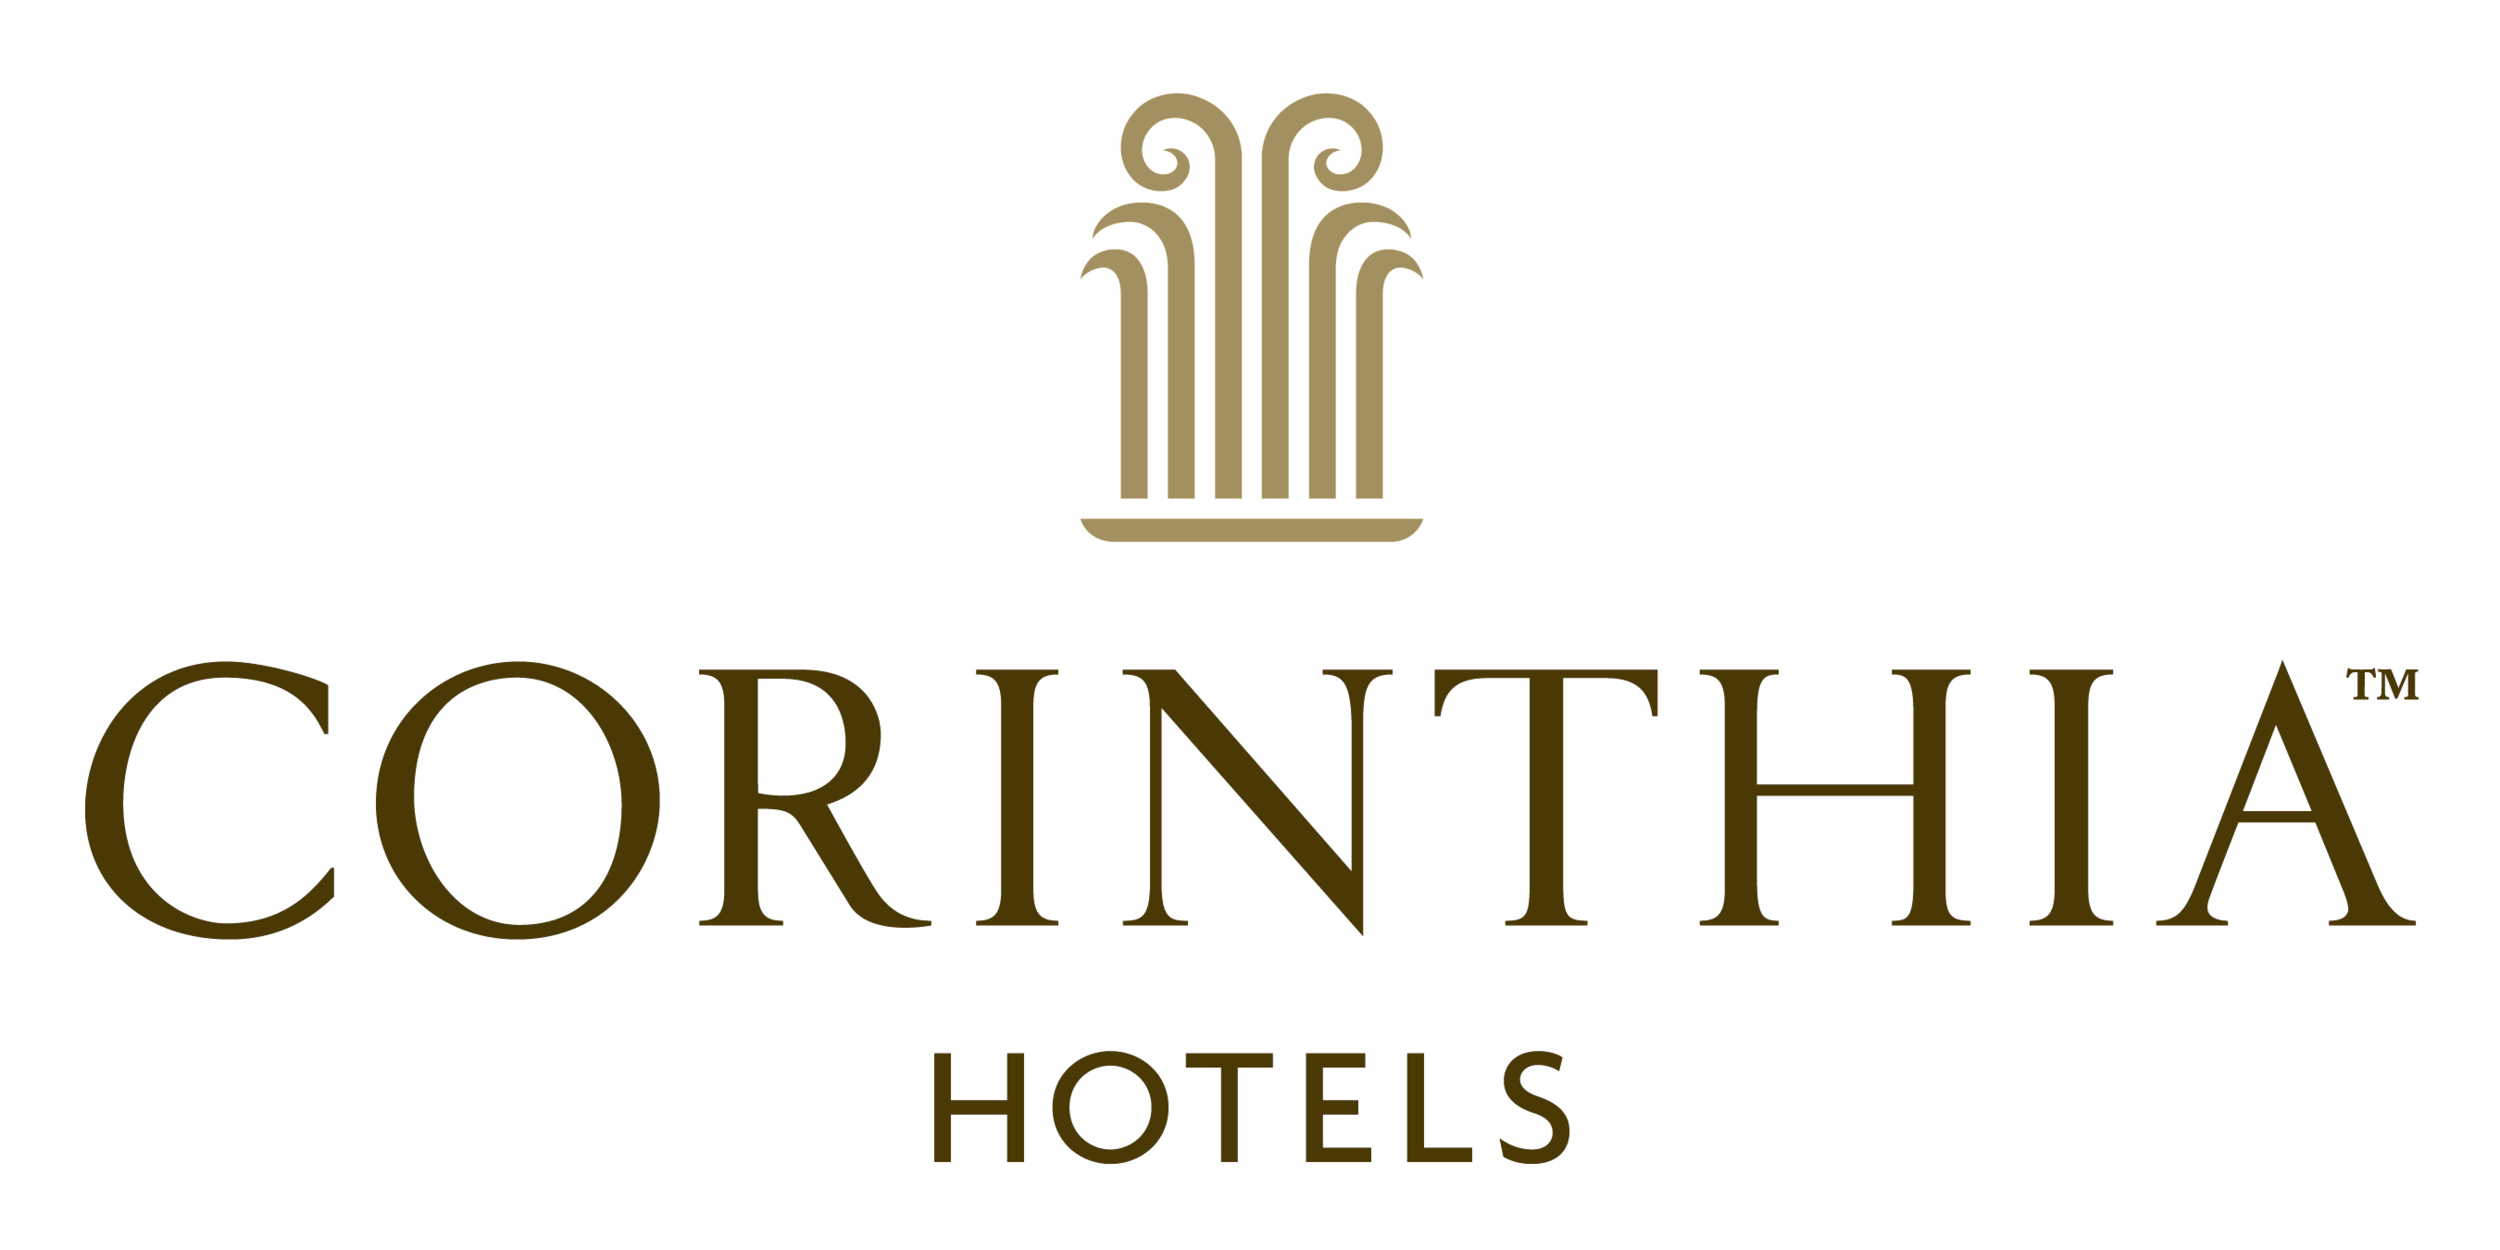 Corinthia_Hotels_logo_logotype.png